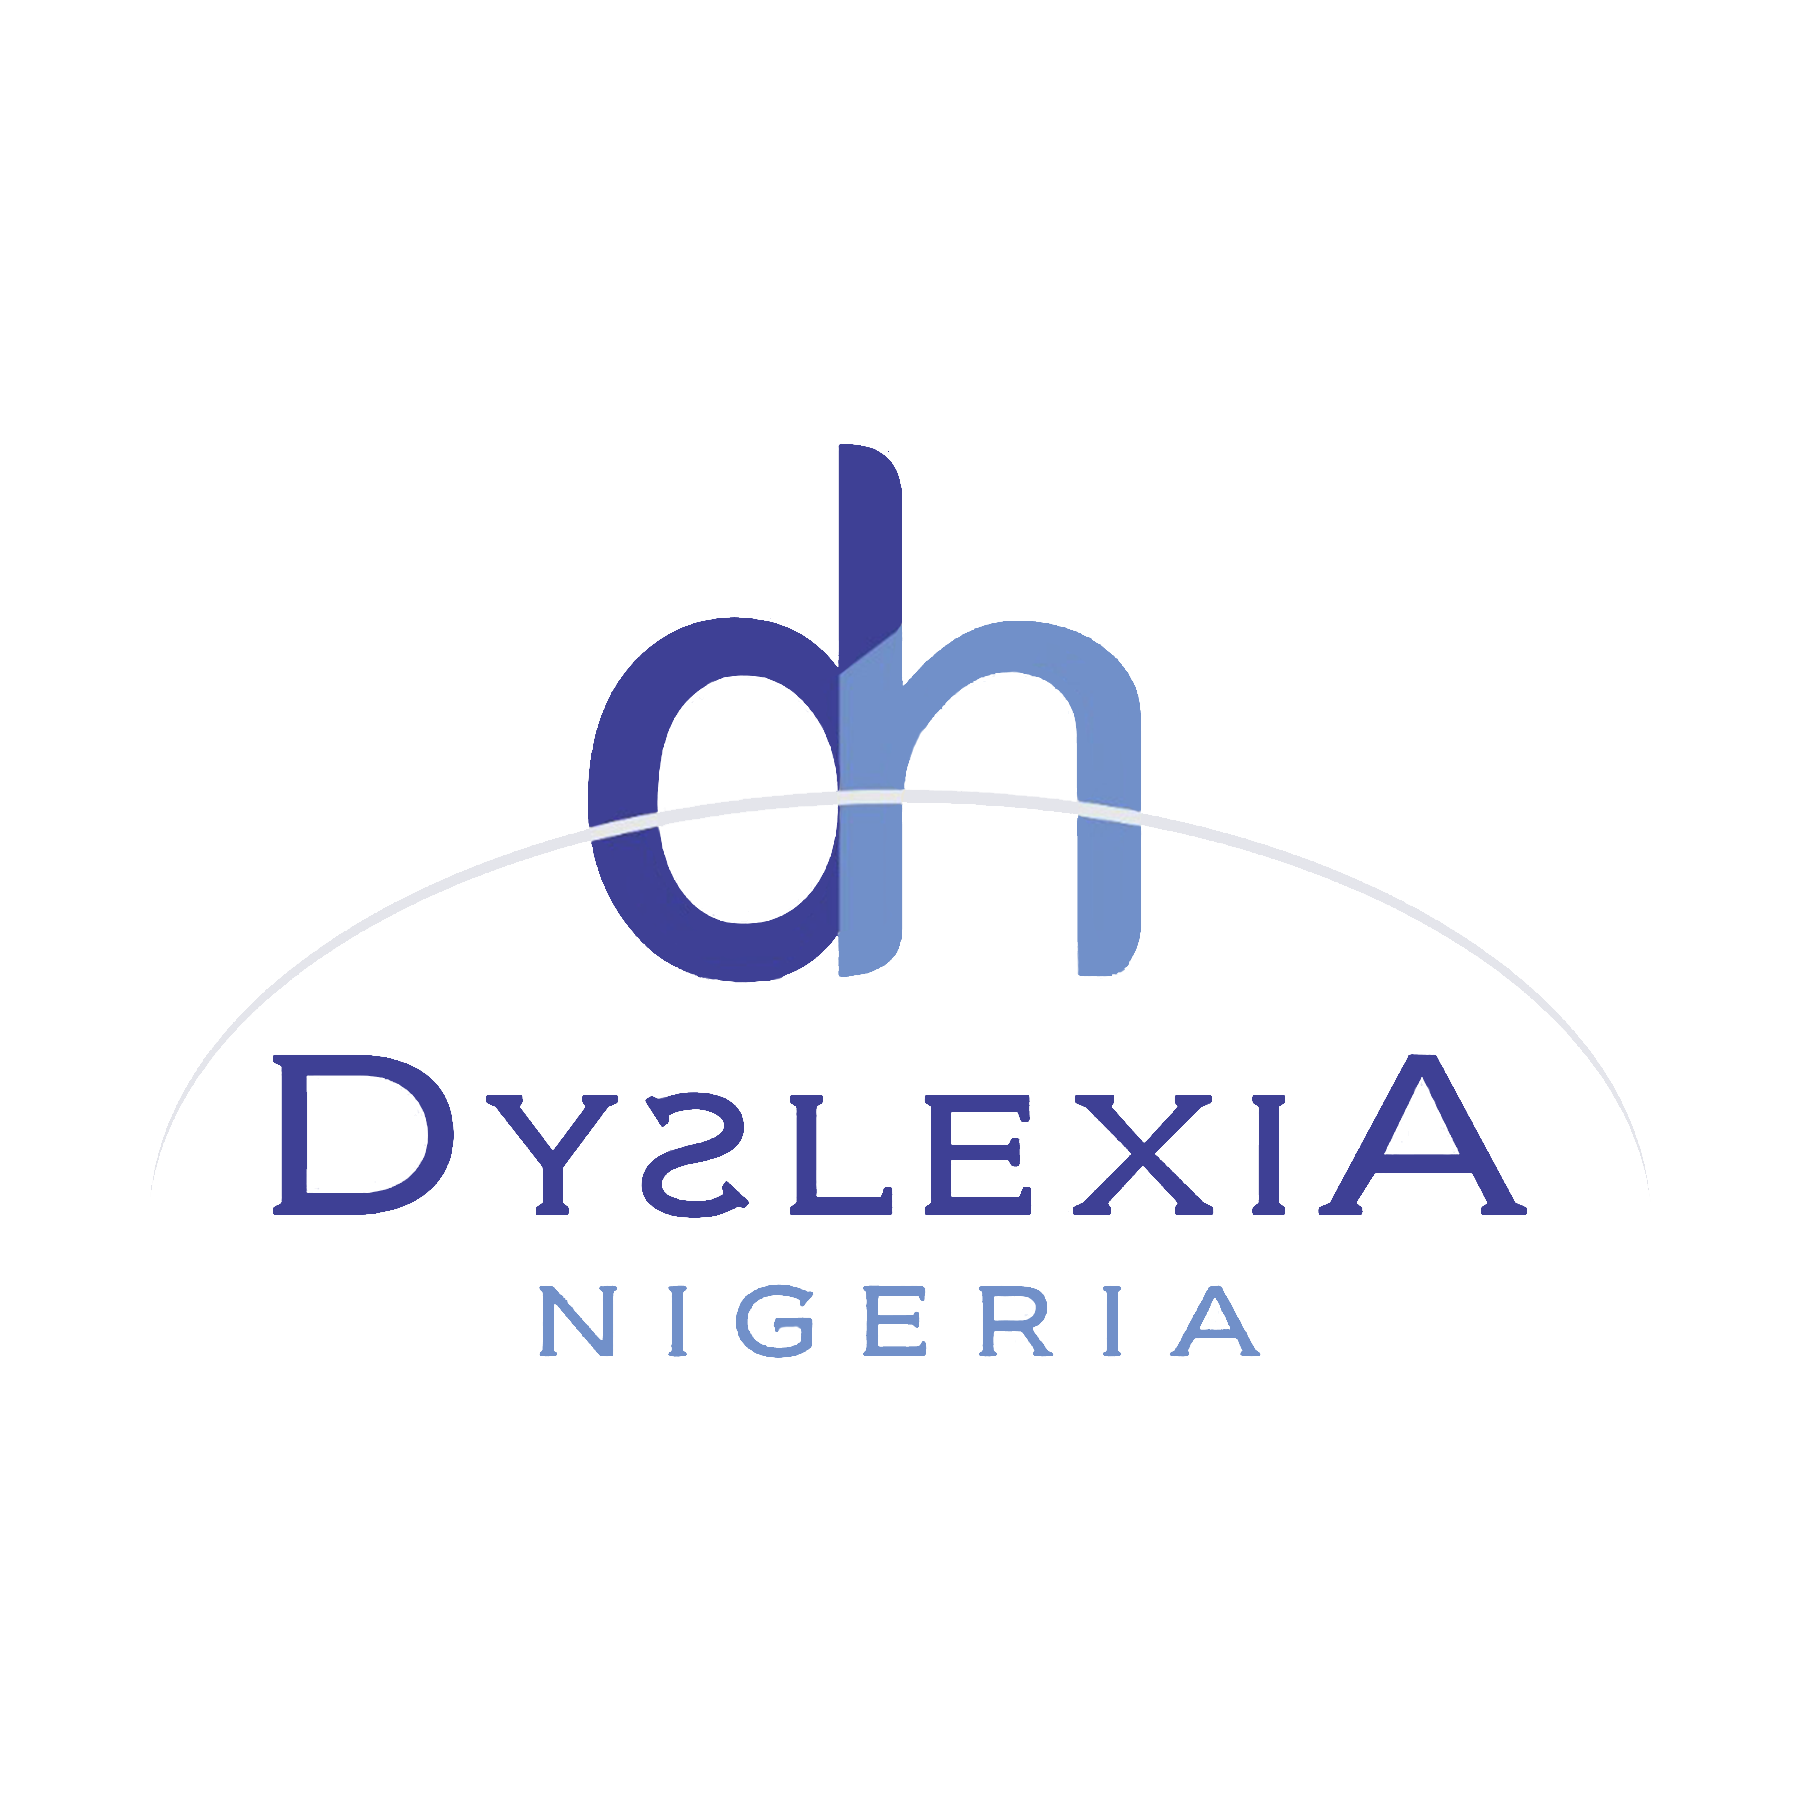 Dyslexia Nigeria